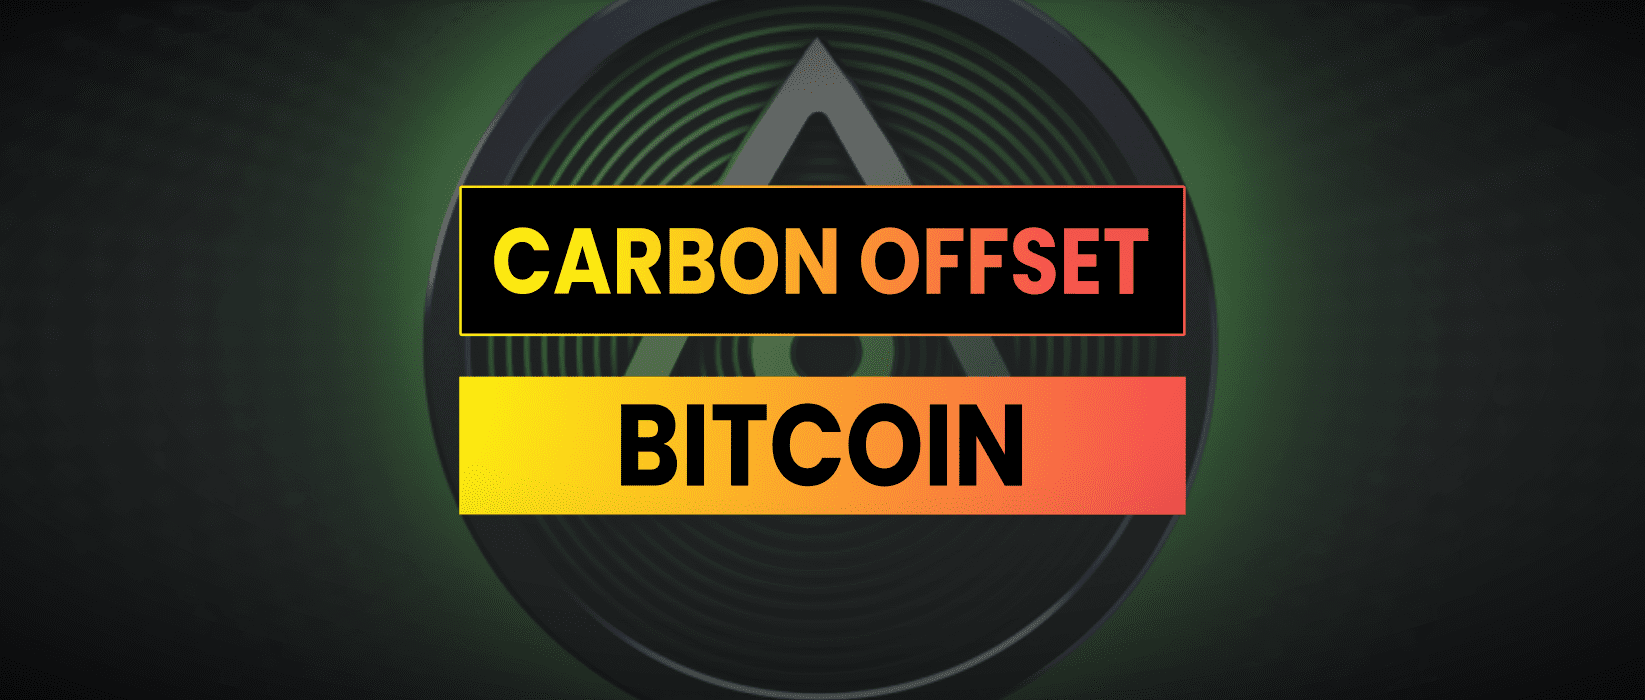 Carbon Offset